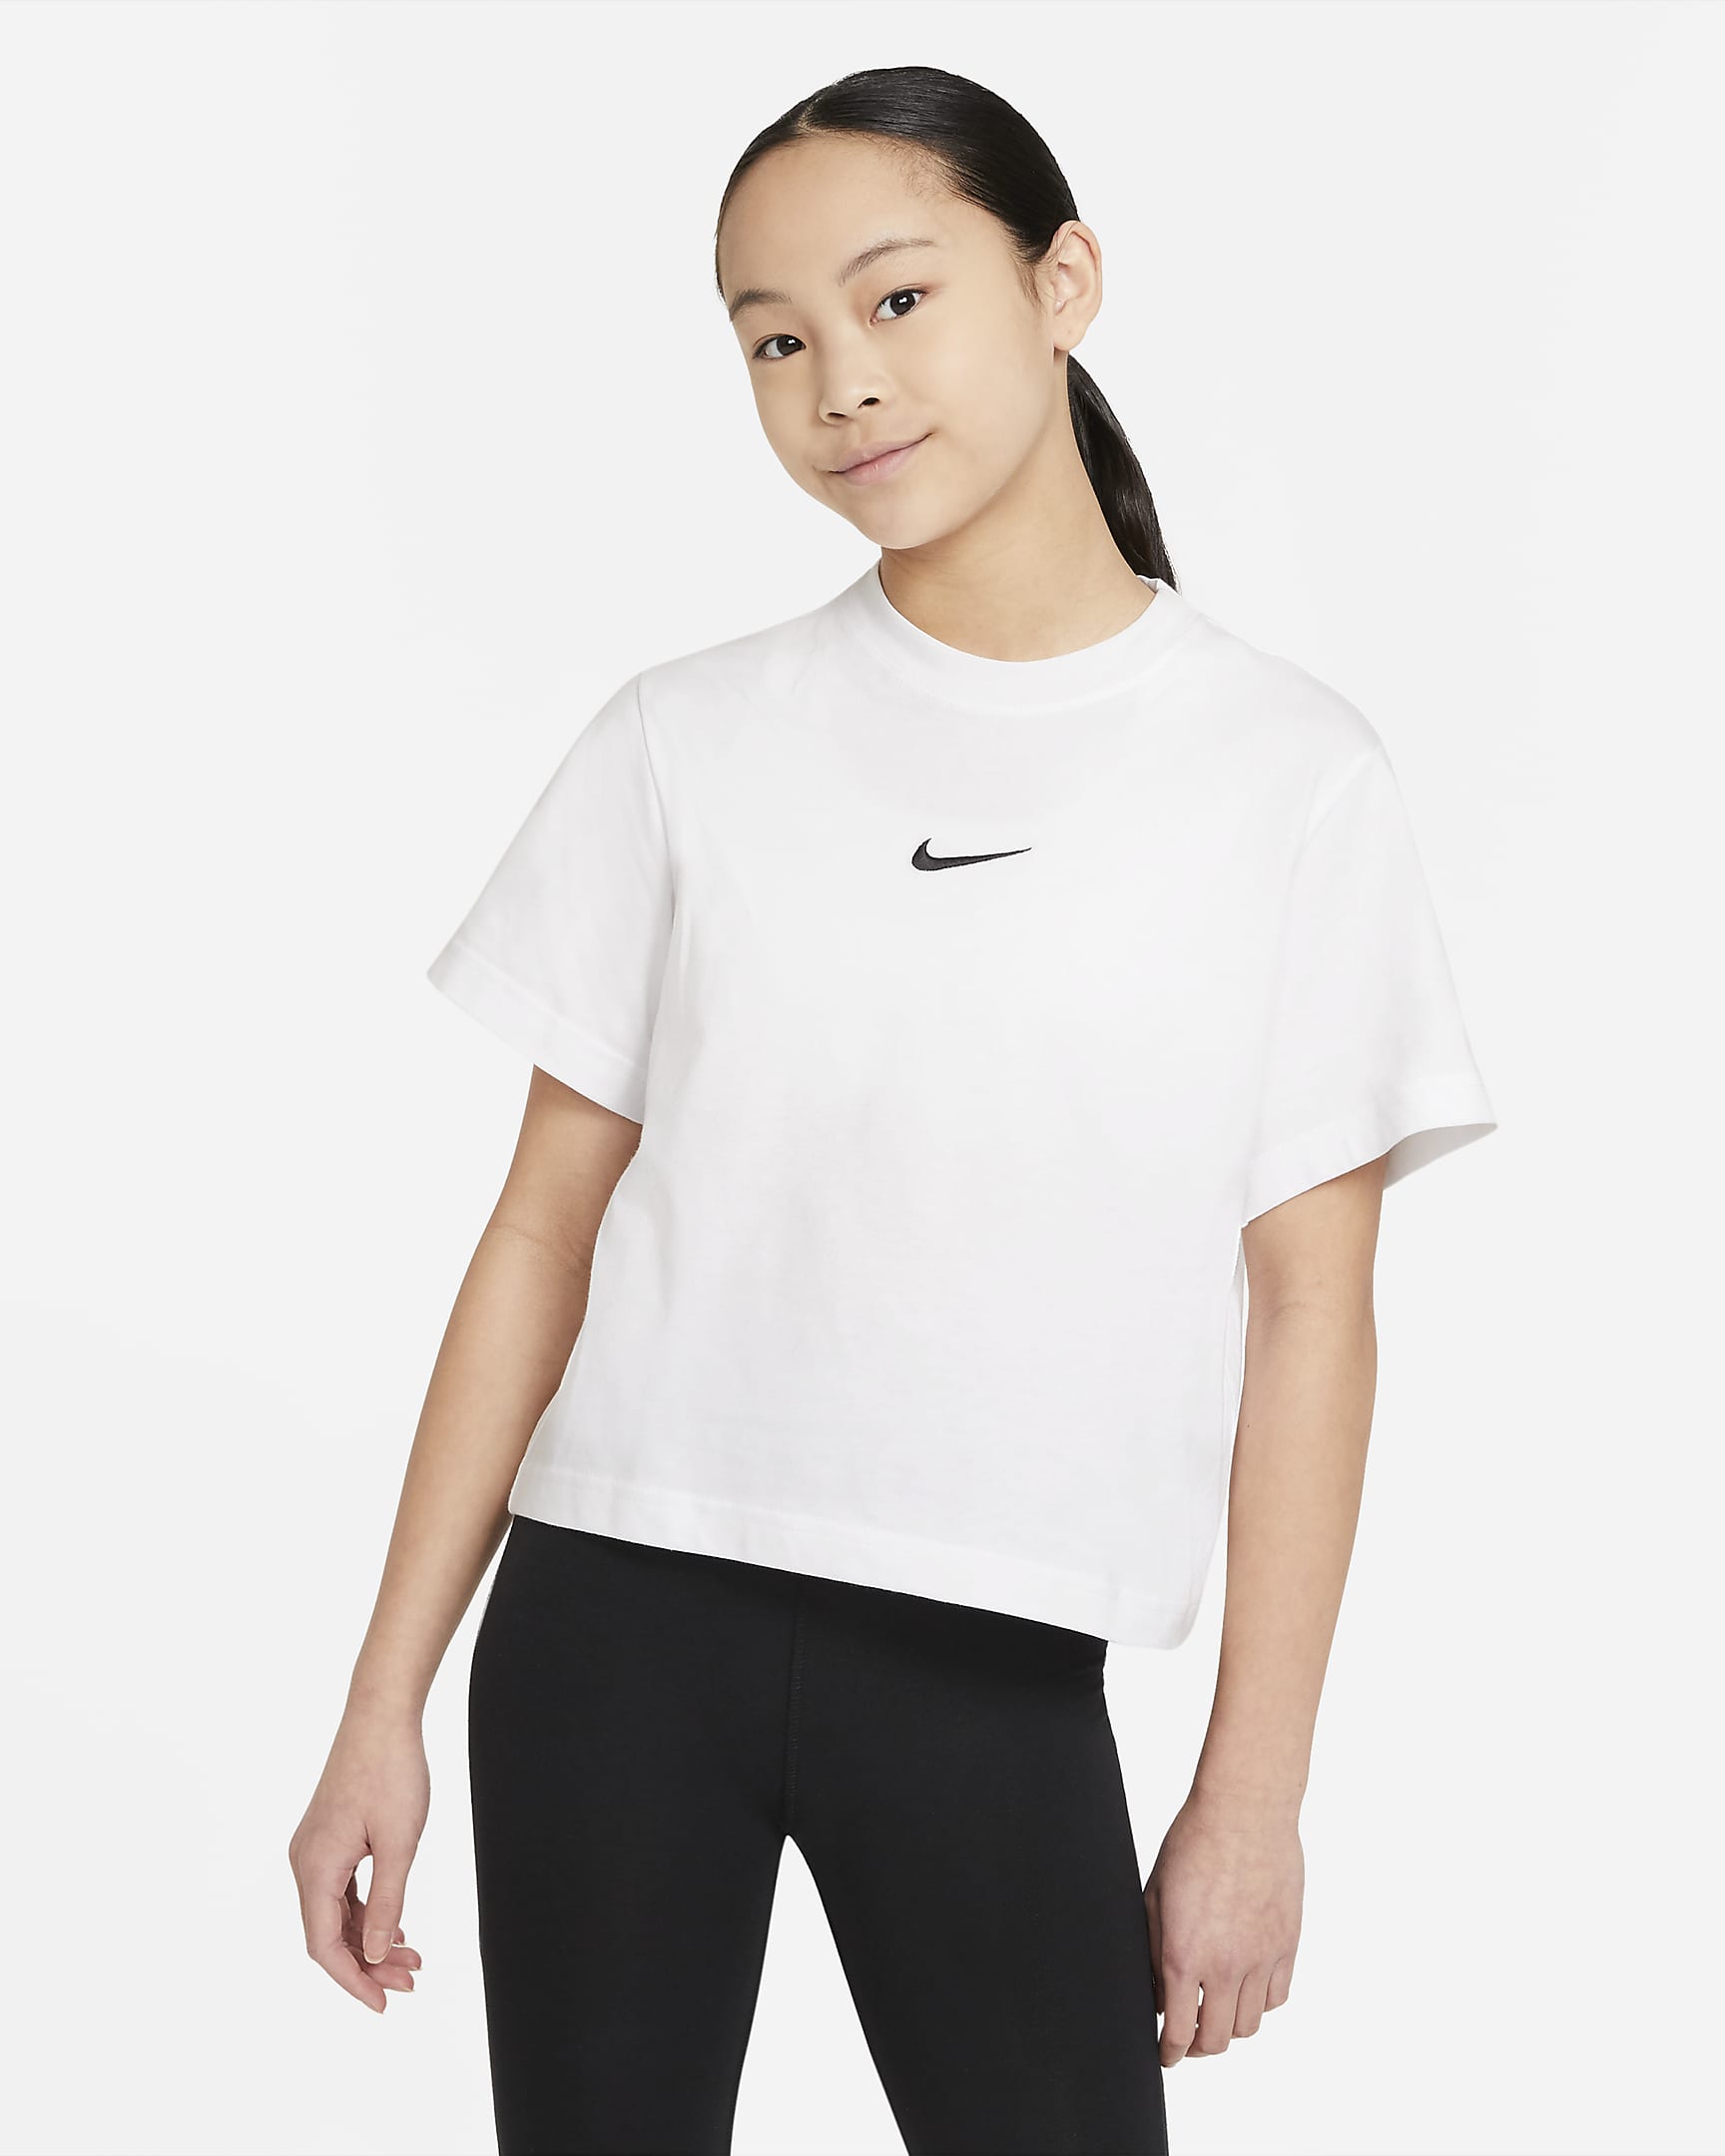 T-shirt Nike Sportswear för ungdom (tjejer) - Vit/Svart